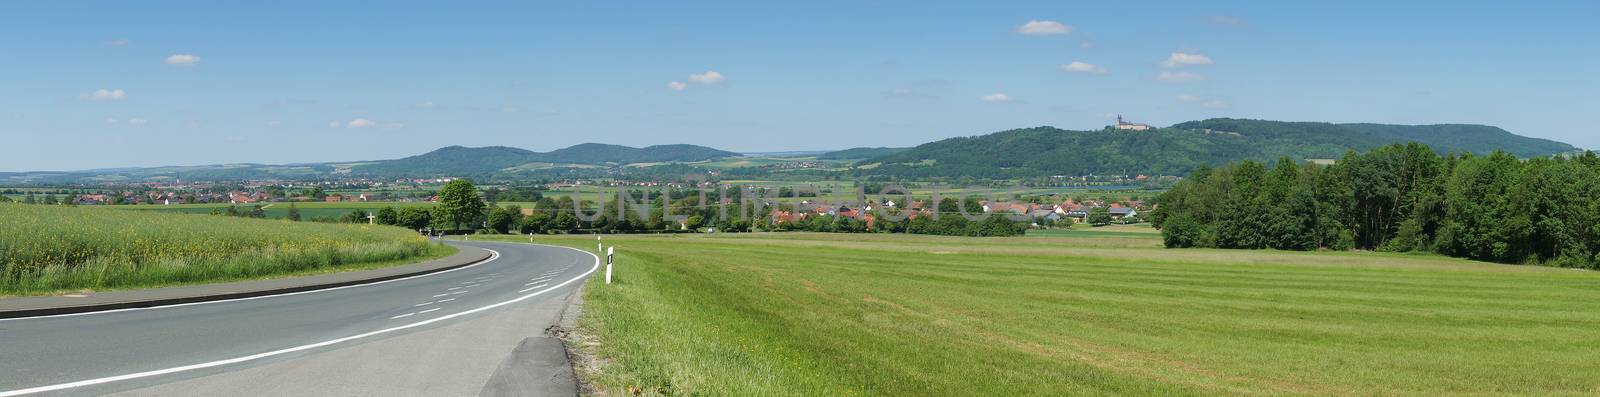 Landscape, Bavaria, Germany by alfotokunst